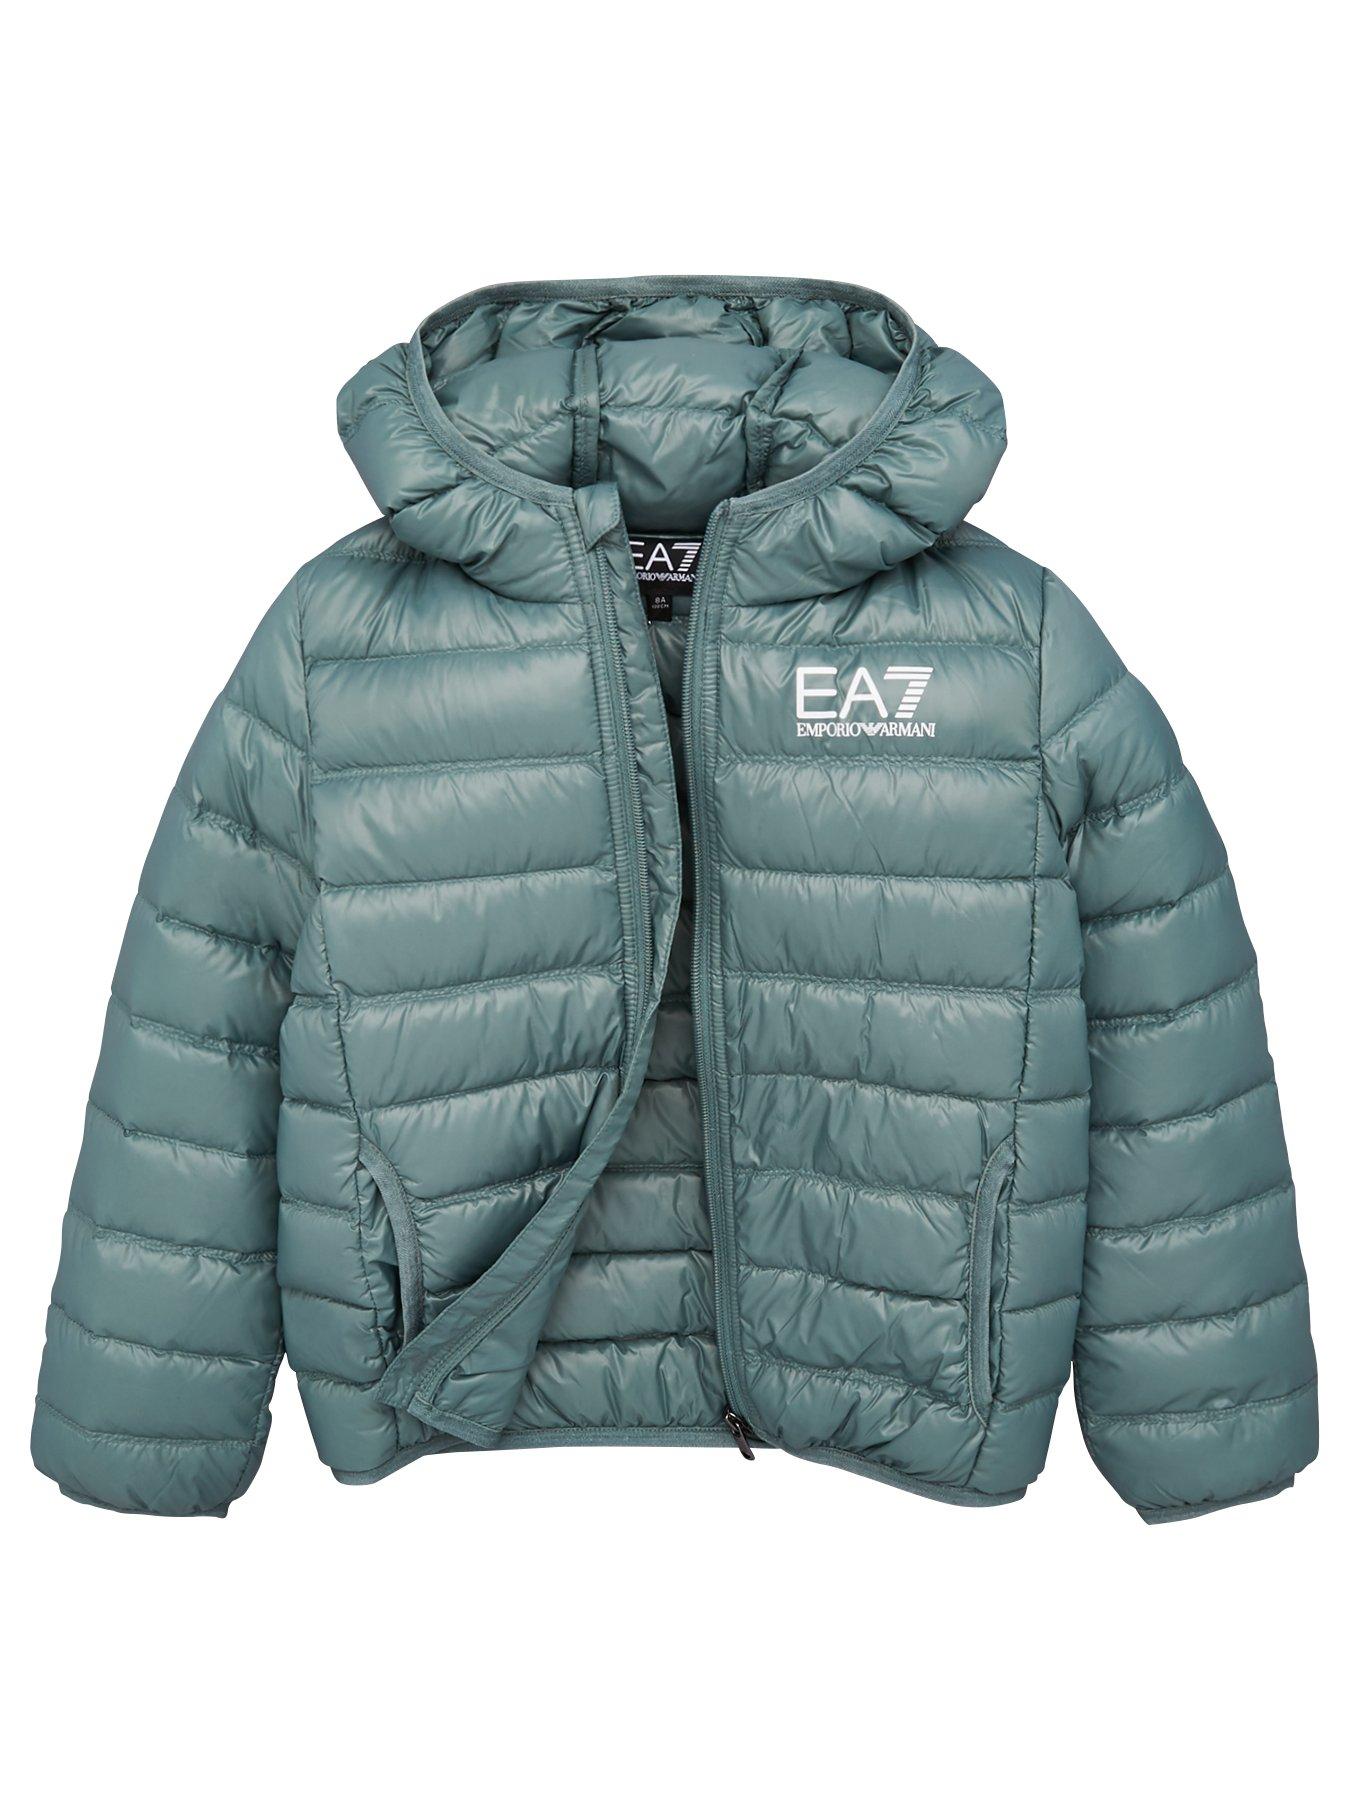 ea7 boys jacket